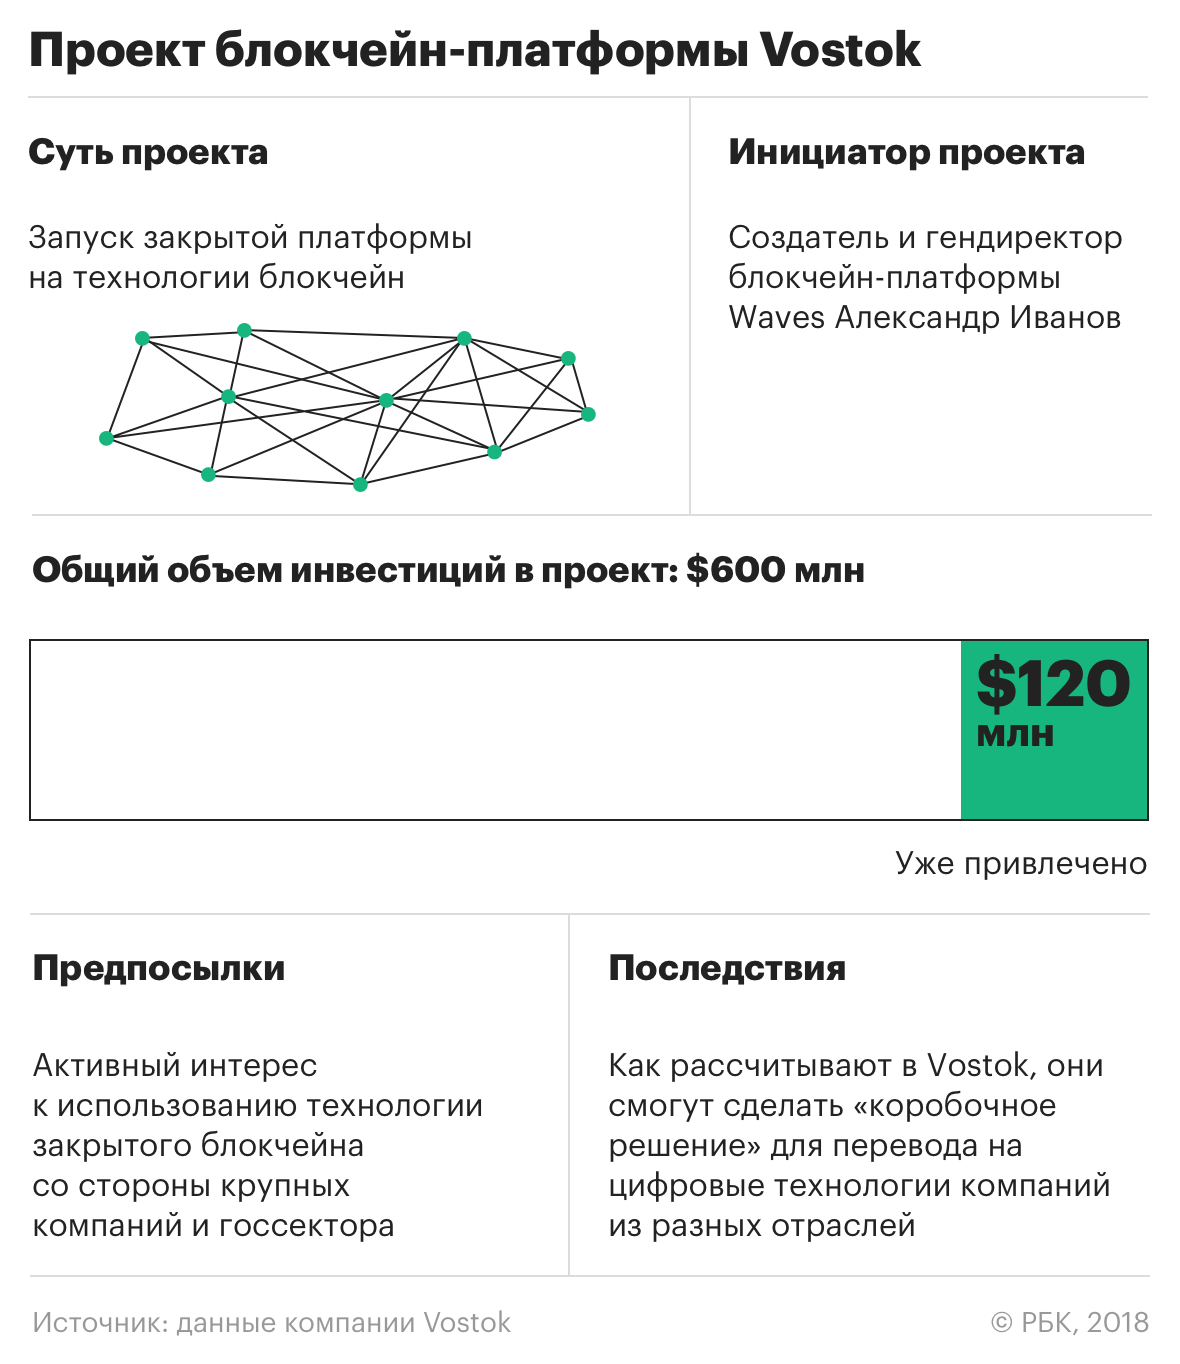 Партнер «Ростеха» блокчейн-платформа Vostok привлекла $120 млн инвестиций